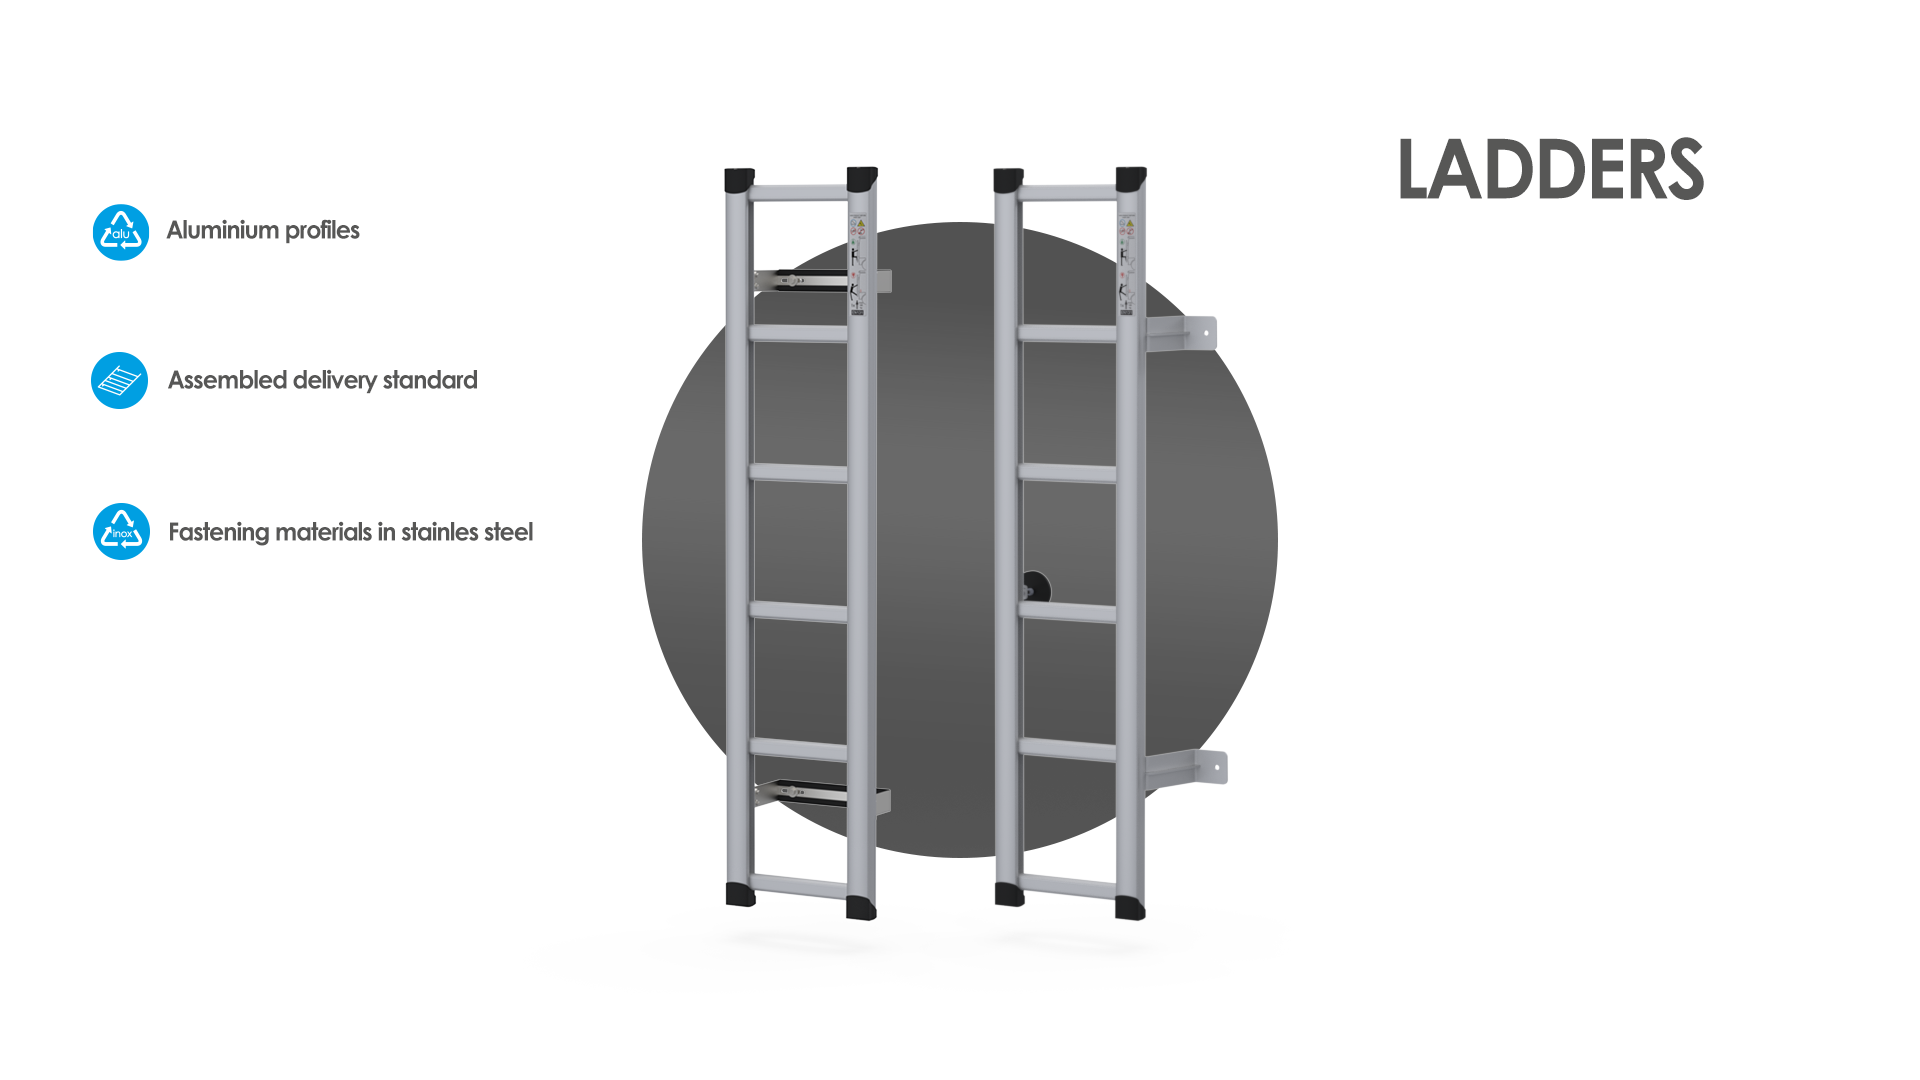 advantages of mobietec ladders